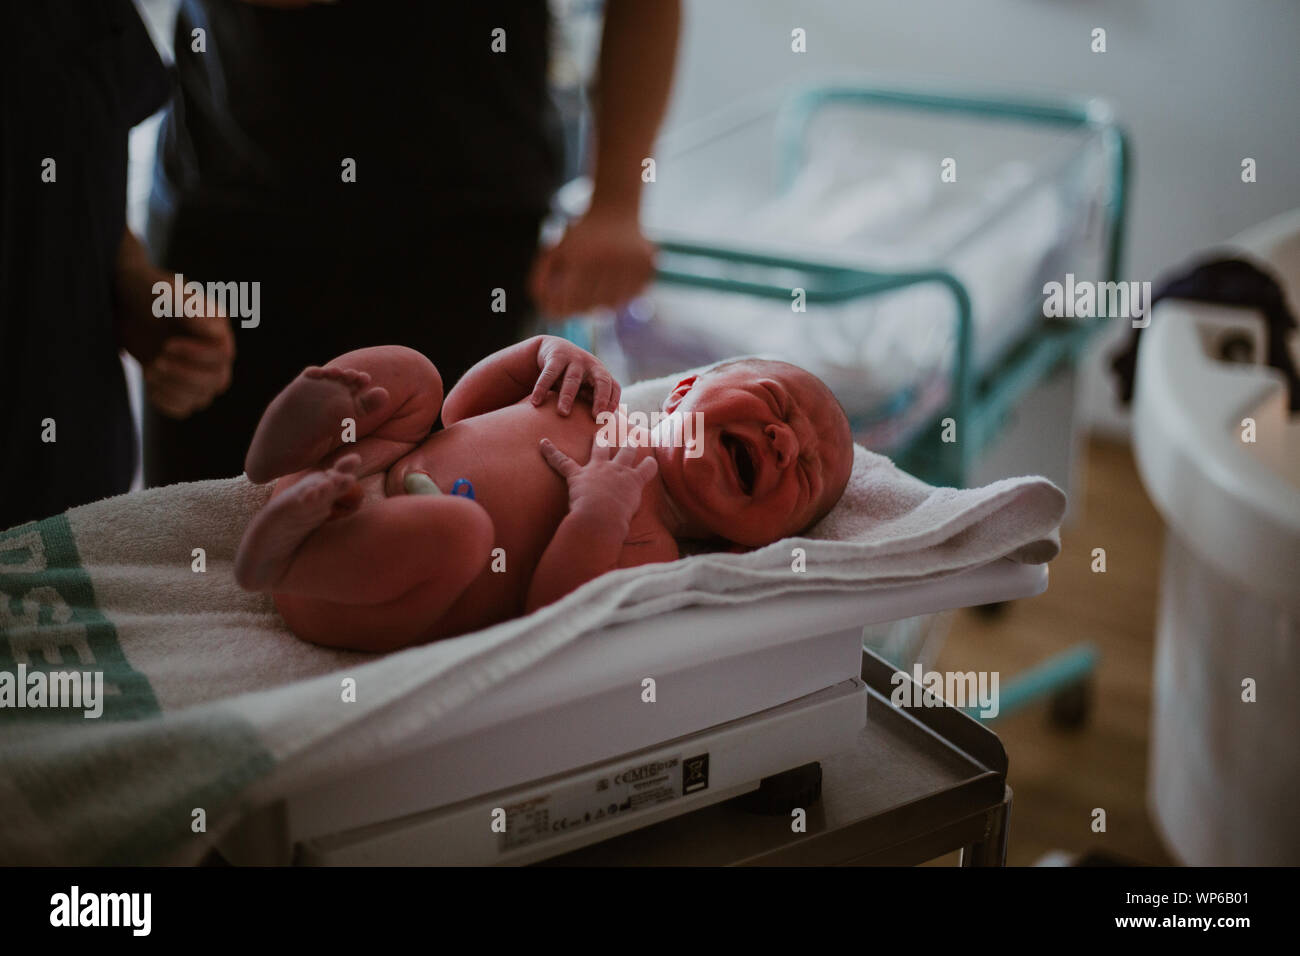 Autentica le immagini di nascita, neonato pesato Foto Stock